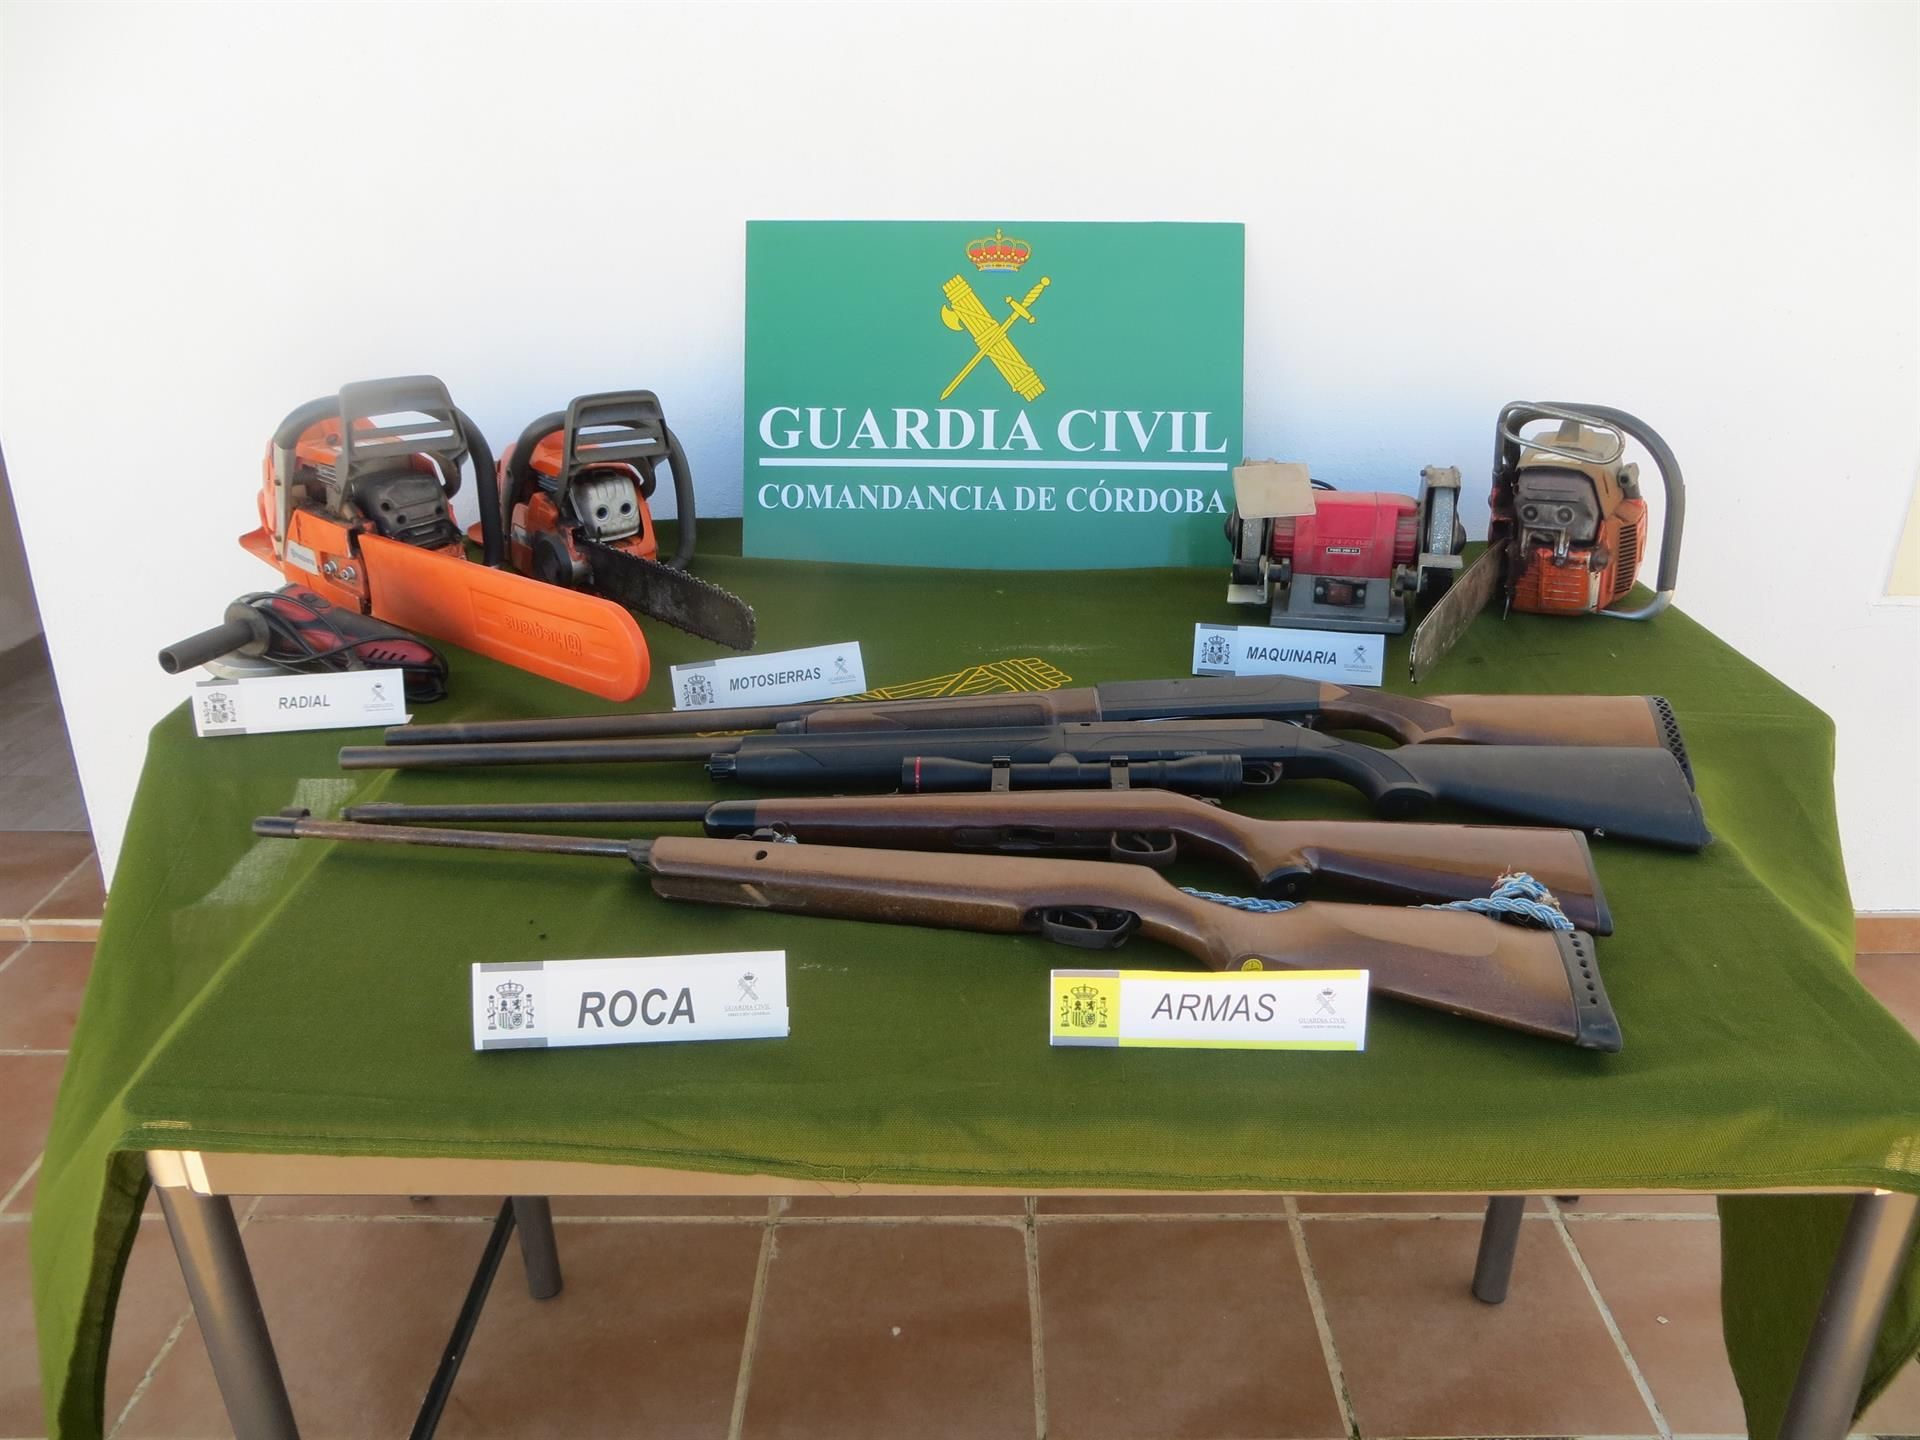 Las dos escopets y la carabina, parte del robo de armas investigado por la Guardia Civil en un pueblo de Córdoba.